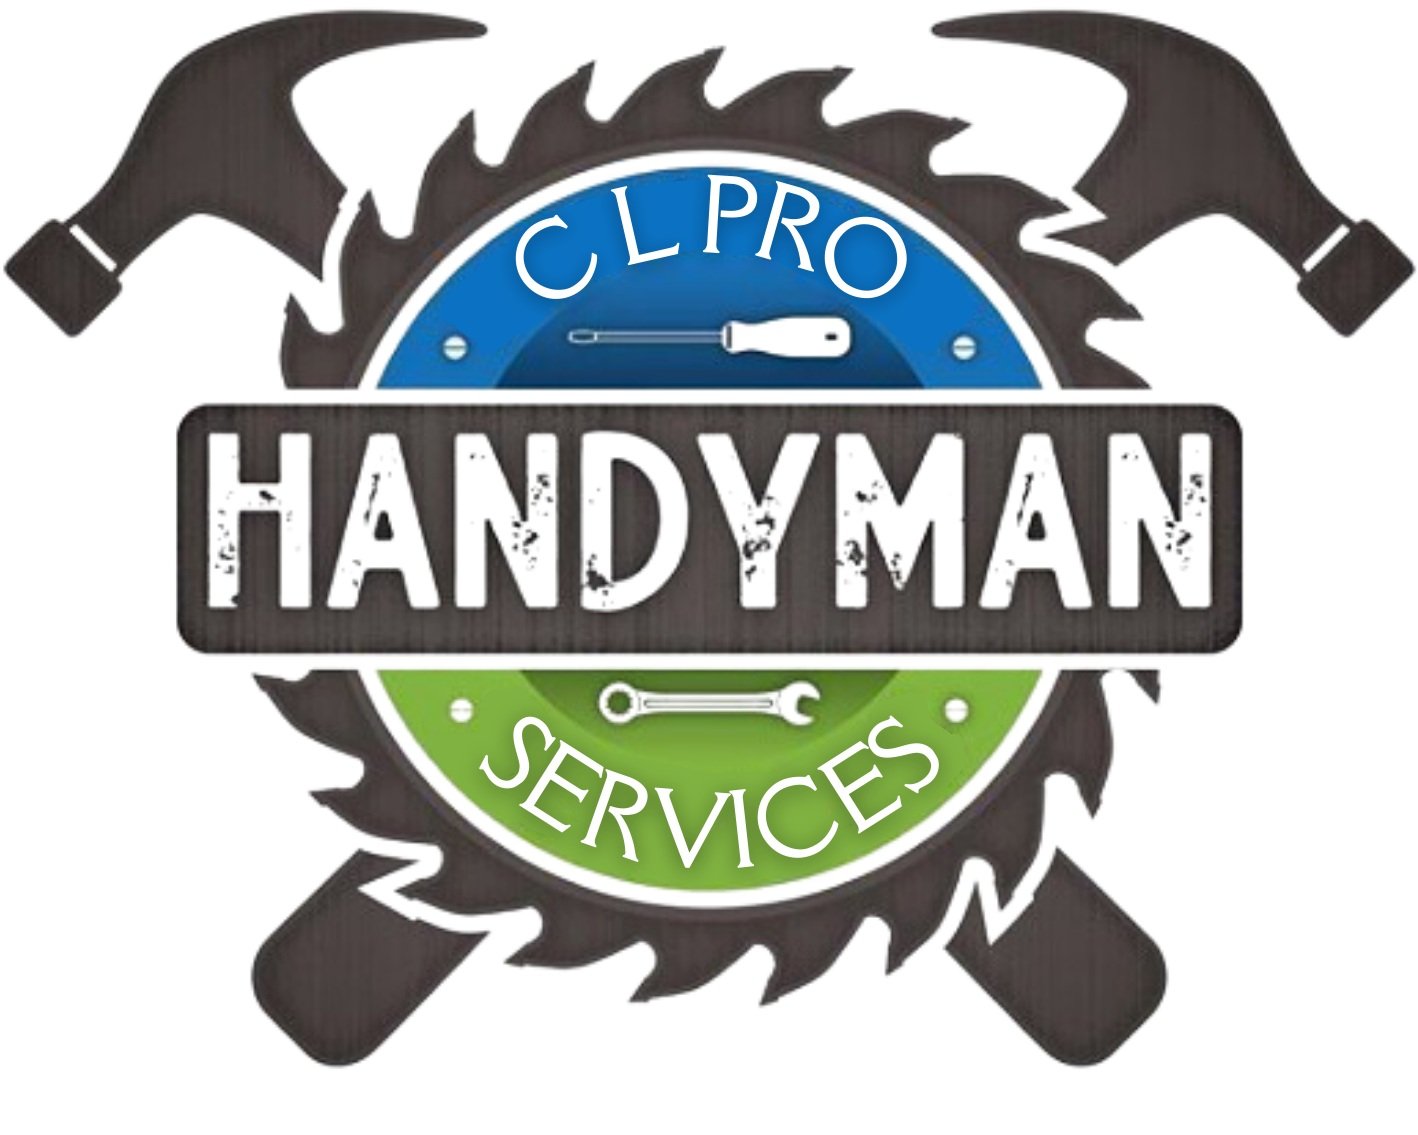 CL Pro Services